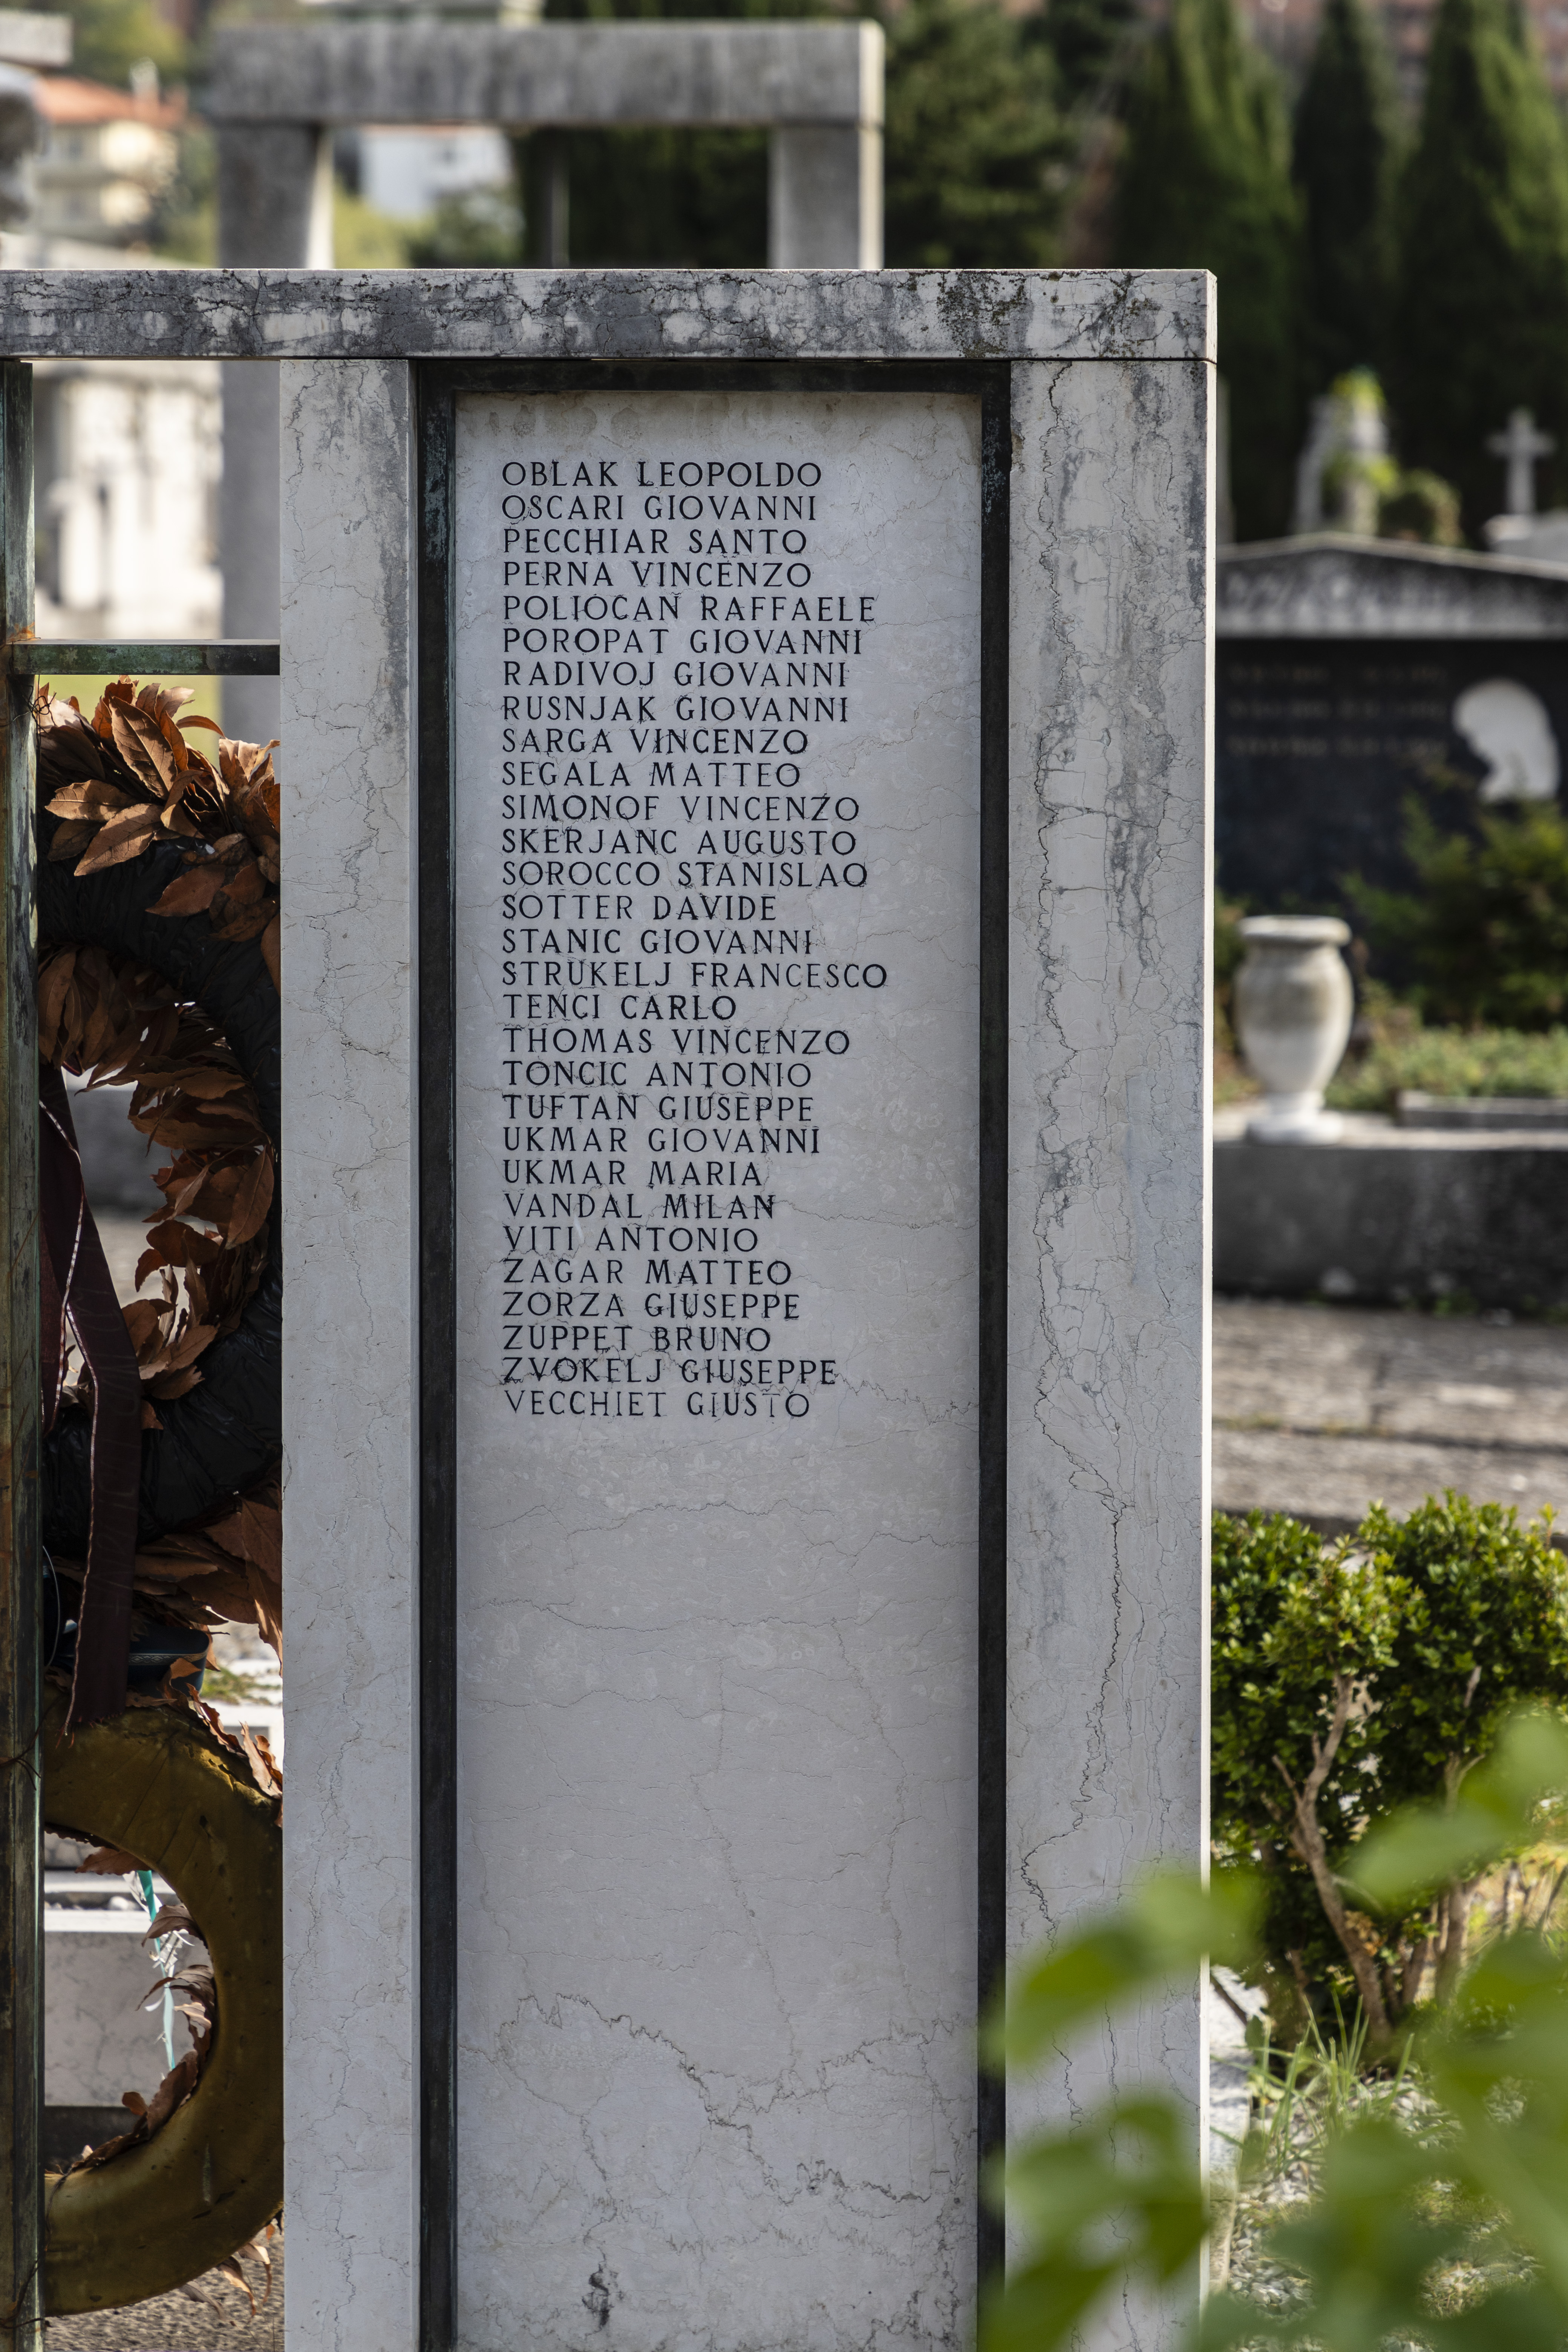 Spomenik žrtvam vojne pri sv. Ani